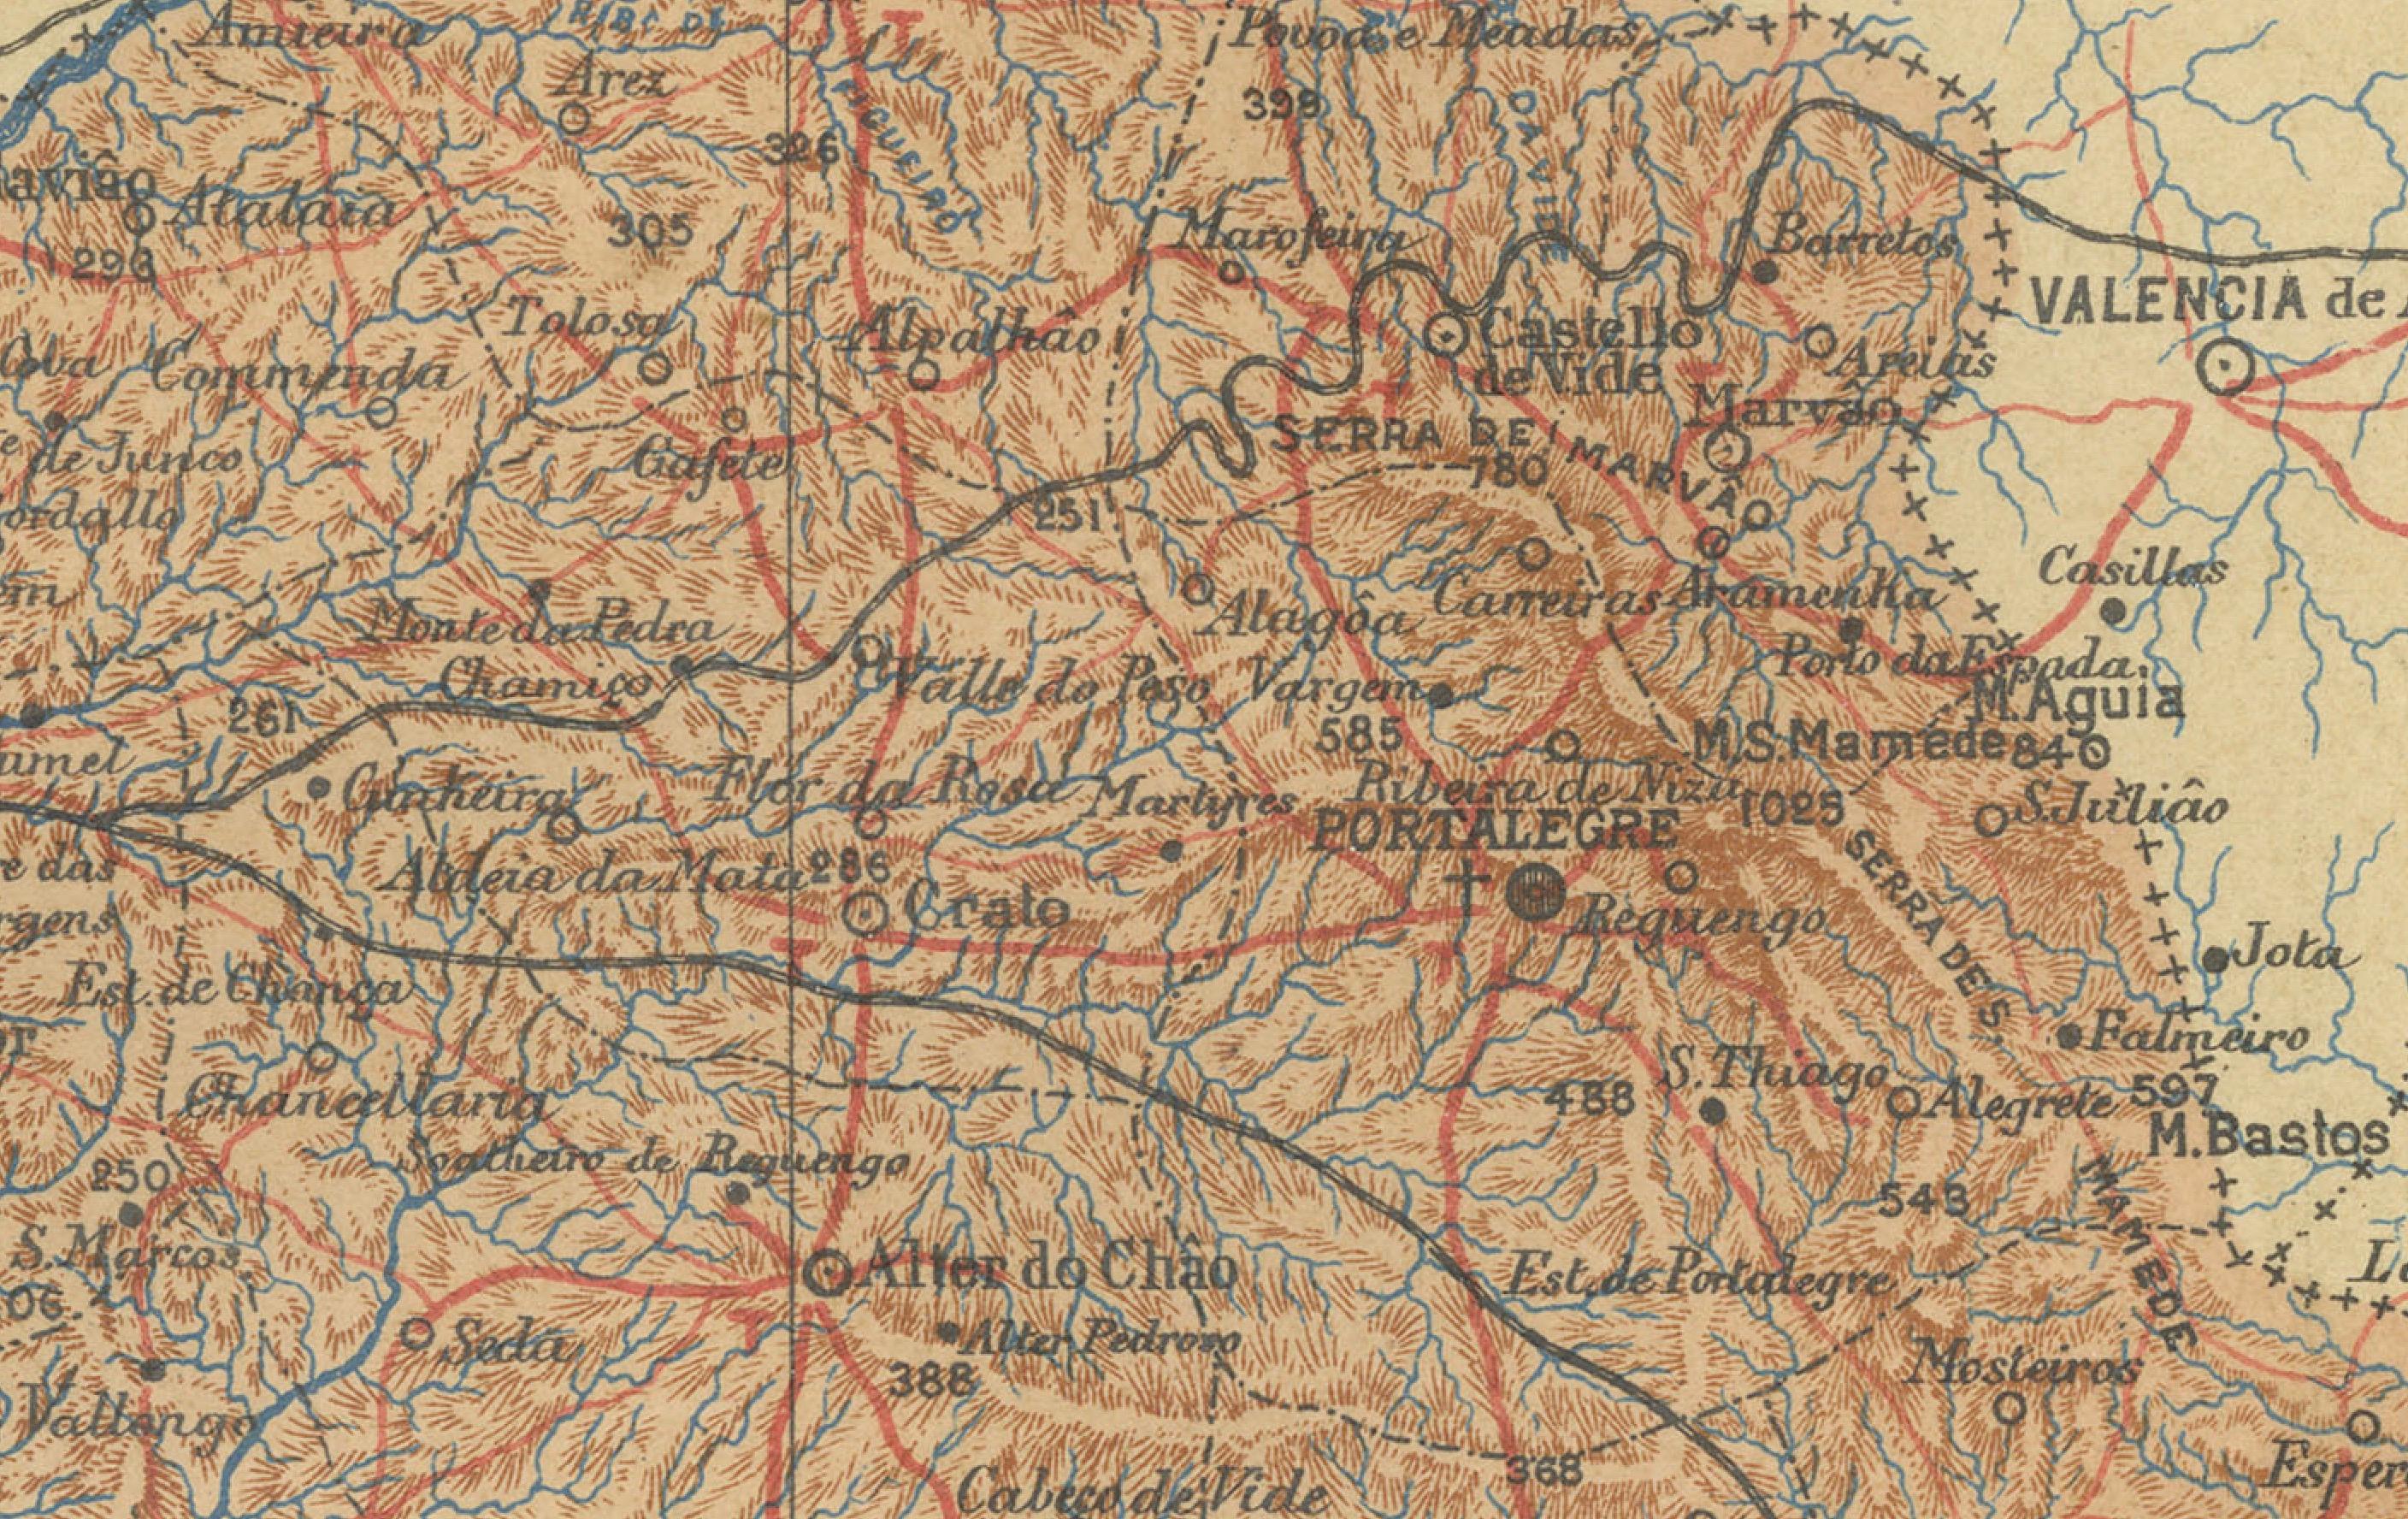 Das Bild ist eine historische, antike Landkarte der Region Alentejo in Portugal. Die Karte zeigt den topografischen Grundriss der Region mit ihrem komplexen Straßen- und Wasserstraßennetz sowie die Stadt Évora, die als wichtiger Ort hervorgehoben